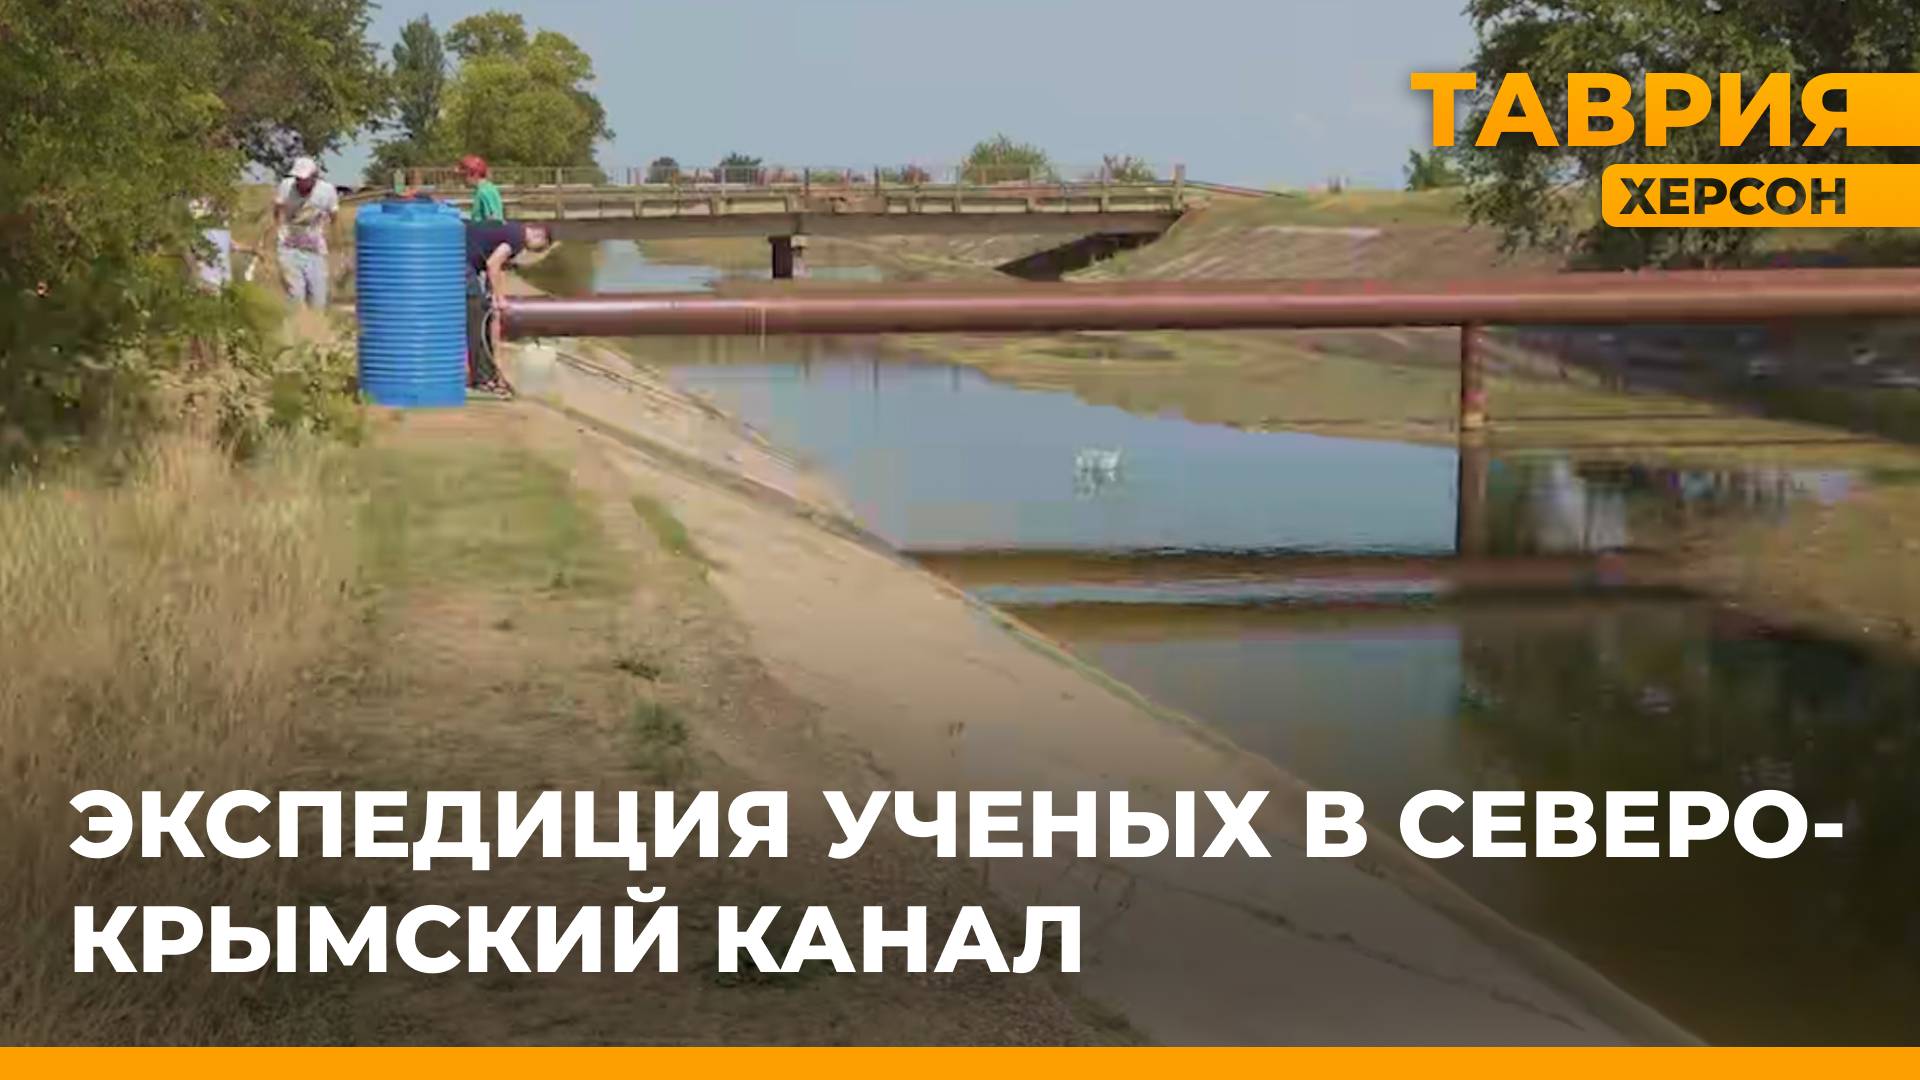 Ученые провели экспедицию в Северо-крымском канале